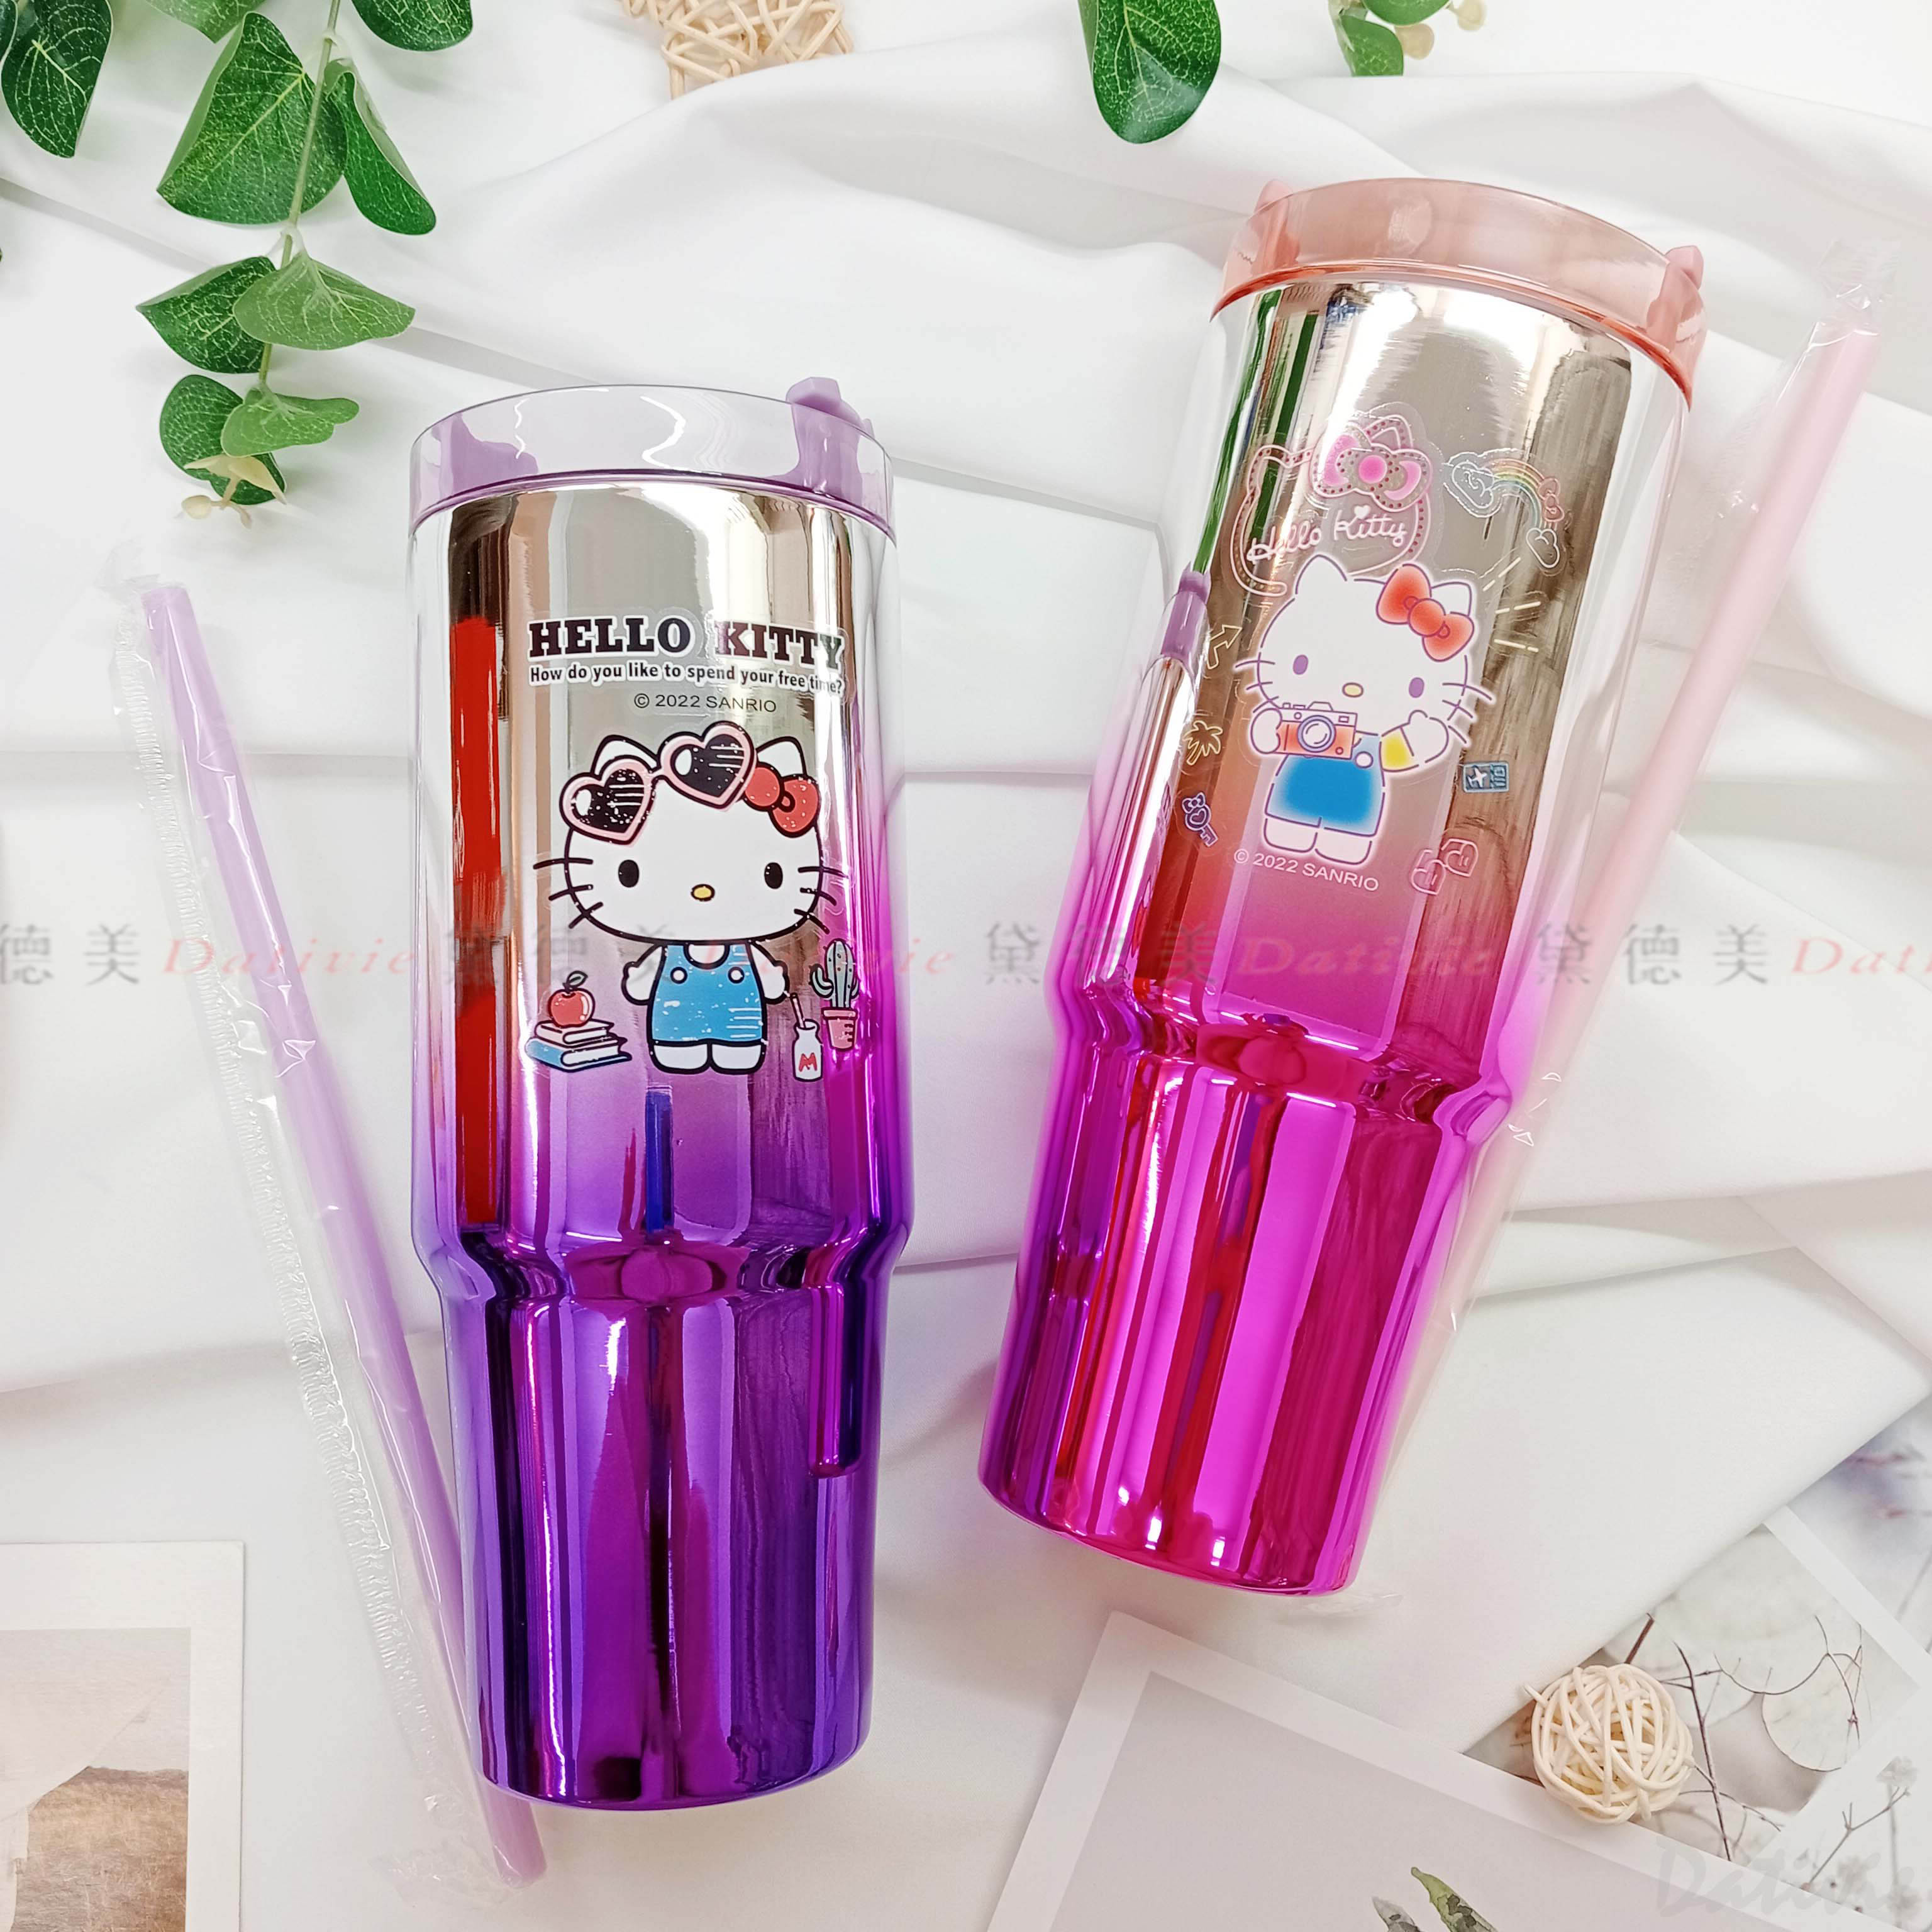 不鏽鋼亮彩吸管杯 450ml-Hello Kitty 三麗鷗 Sanrio 正版授權